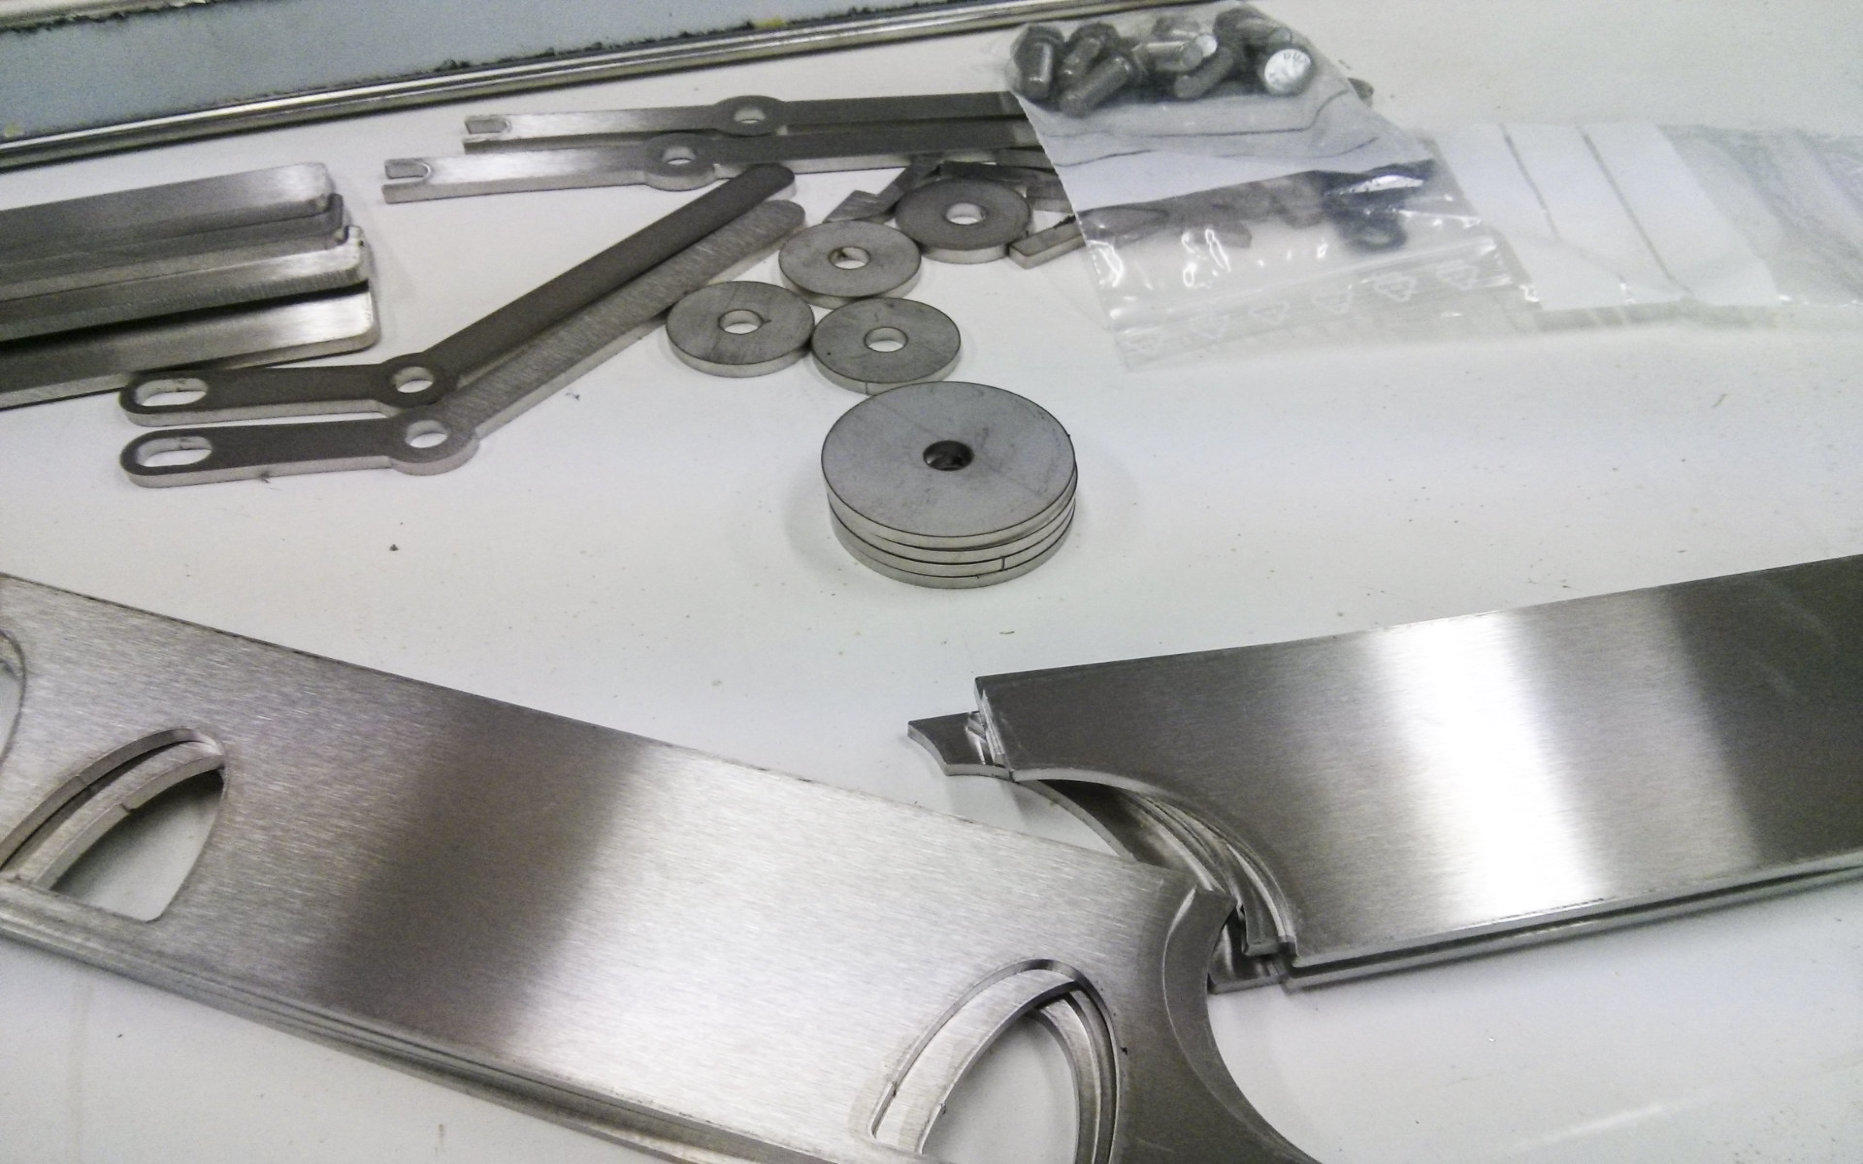 assembling-laser-cut-parts